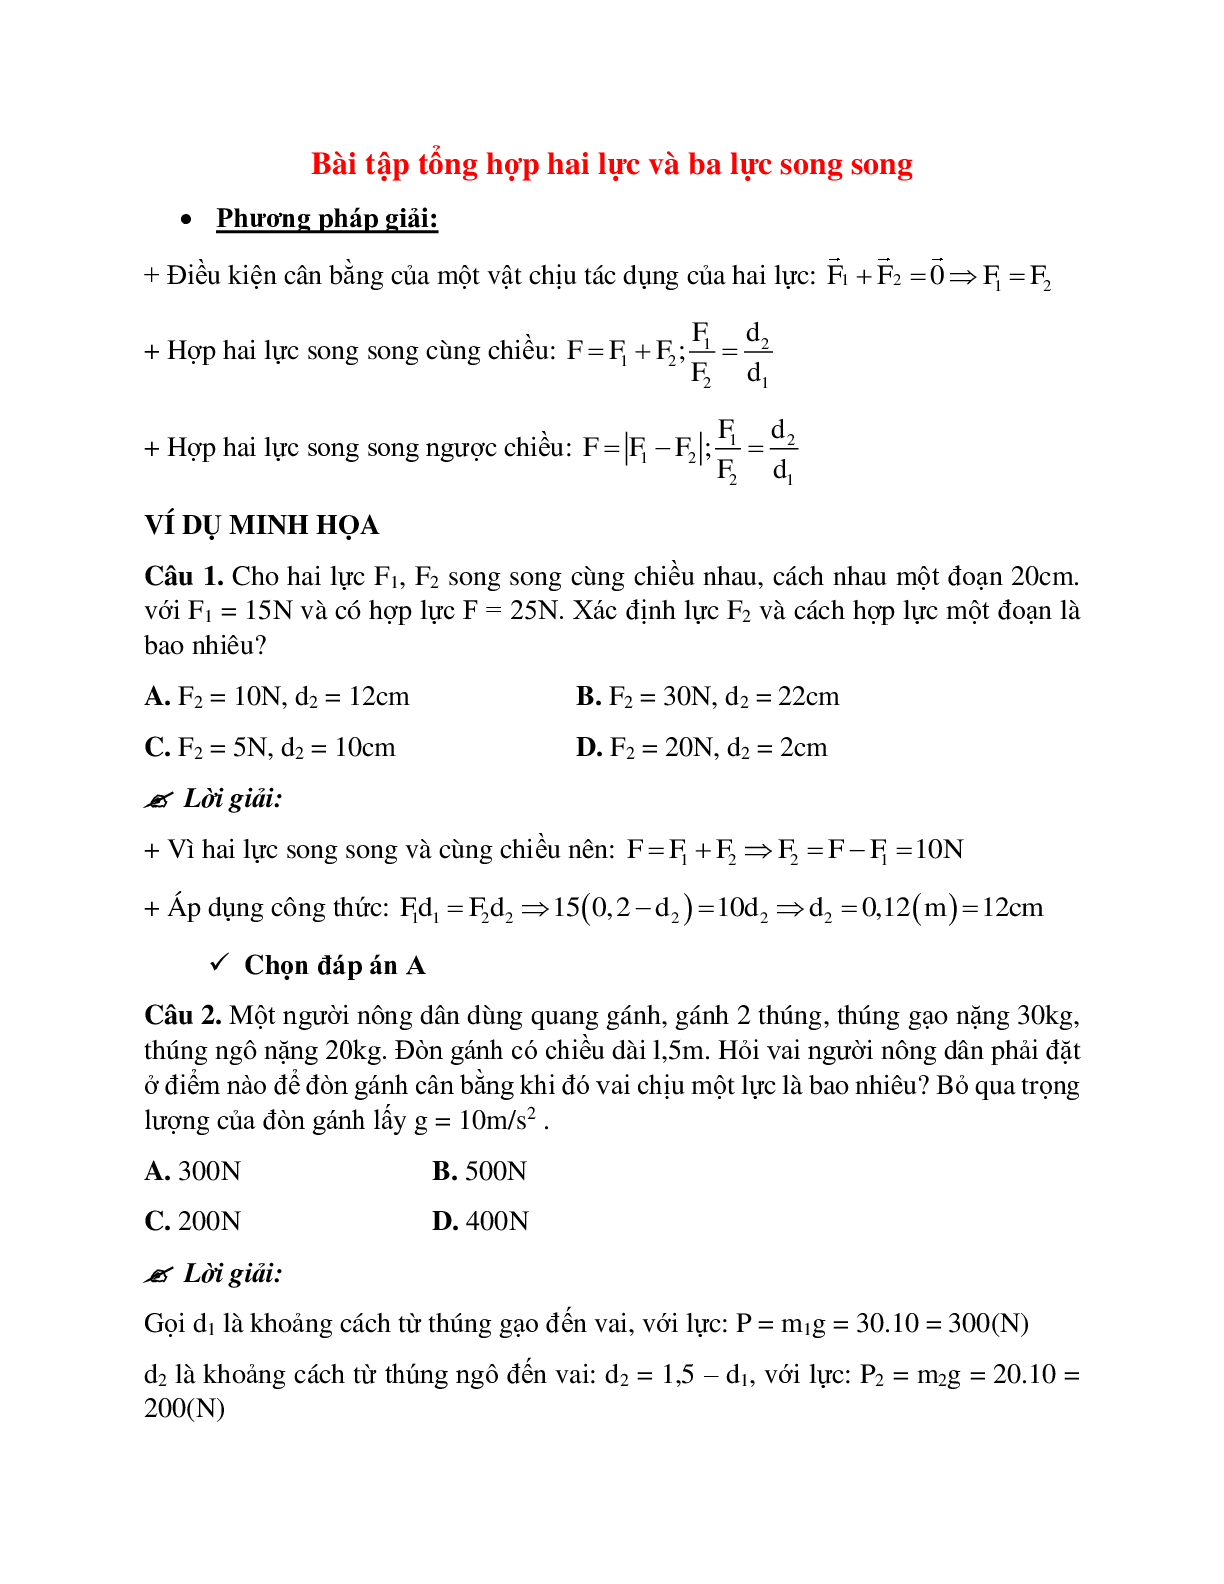 Bài tập về tổng hợp hai lực và ba lực song song có lời giải chi tiết (trang 1)